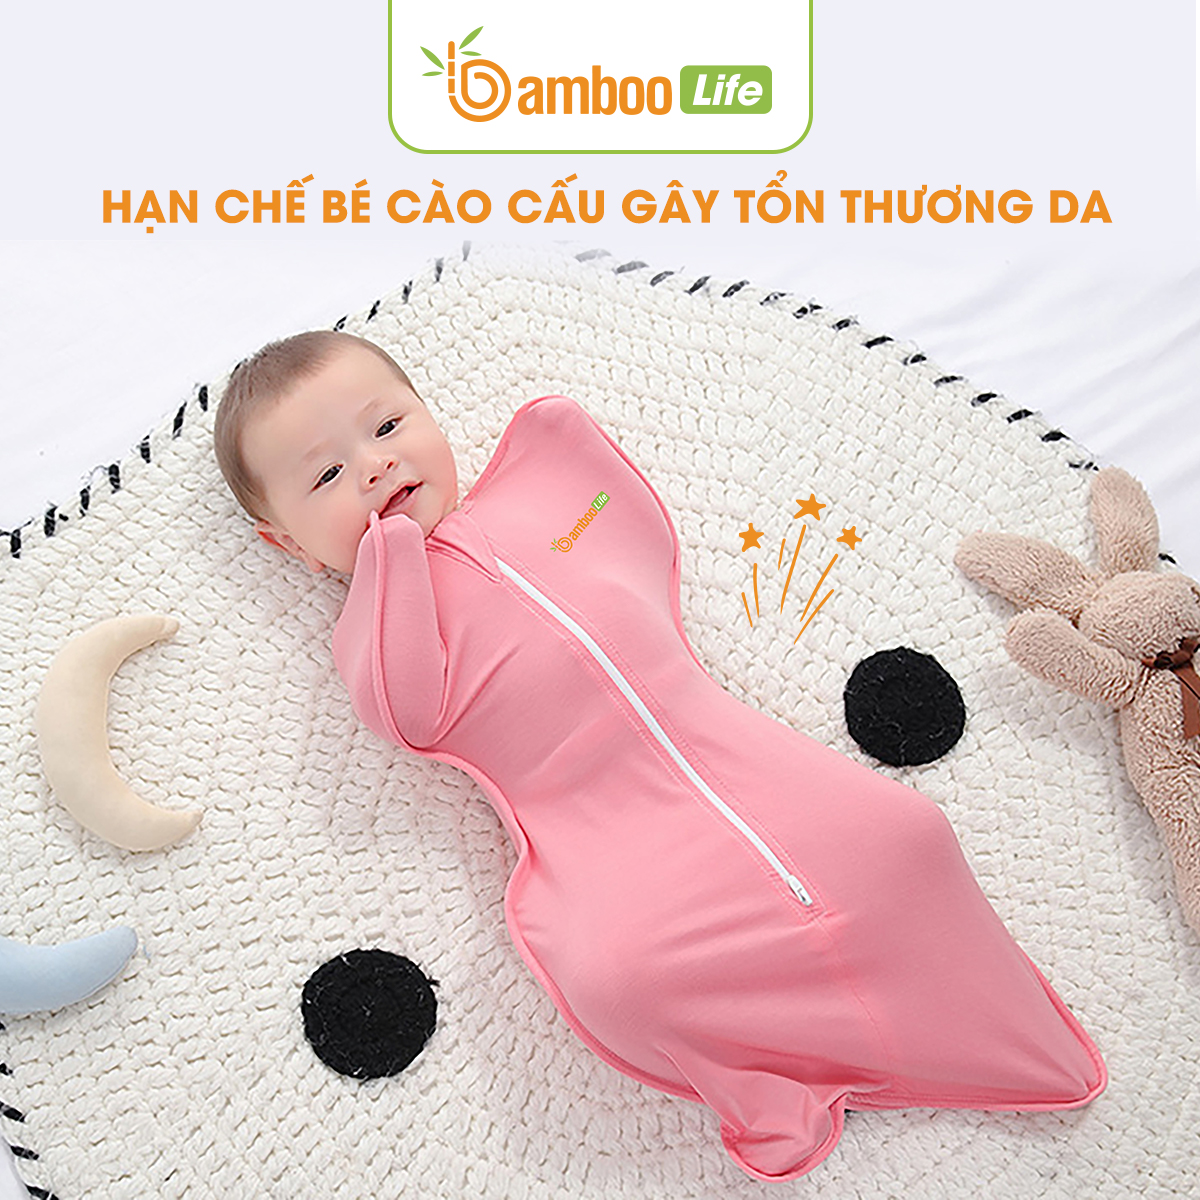 Nhộng chũn Quấn chũn sợi tre Bamboo Life BL069 hàng chính hãng cho bé Túi ngủ cho bé giúp bé ngủ sâu chống giật mình 